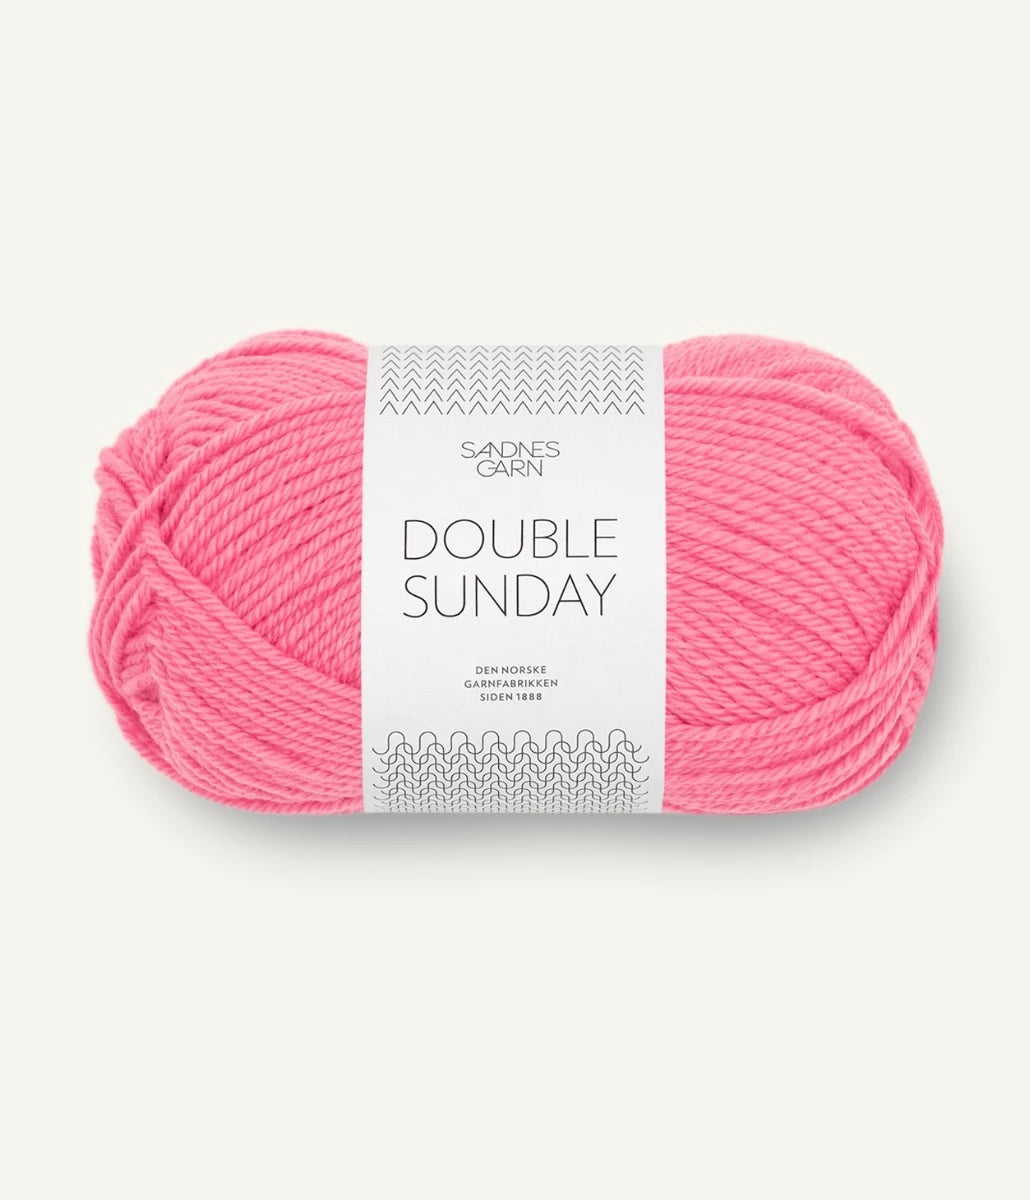 Kuvassa on Sandnes Garn Double Sunday -lanka (yarn) värissä Bubblegum Pink.